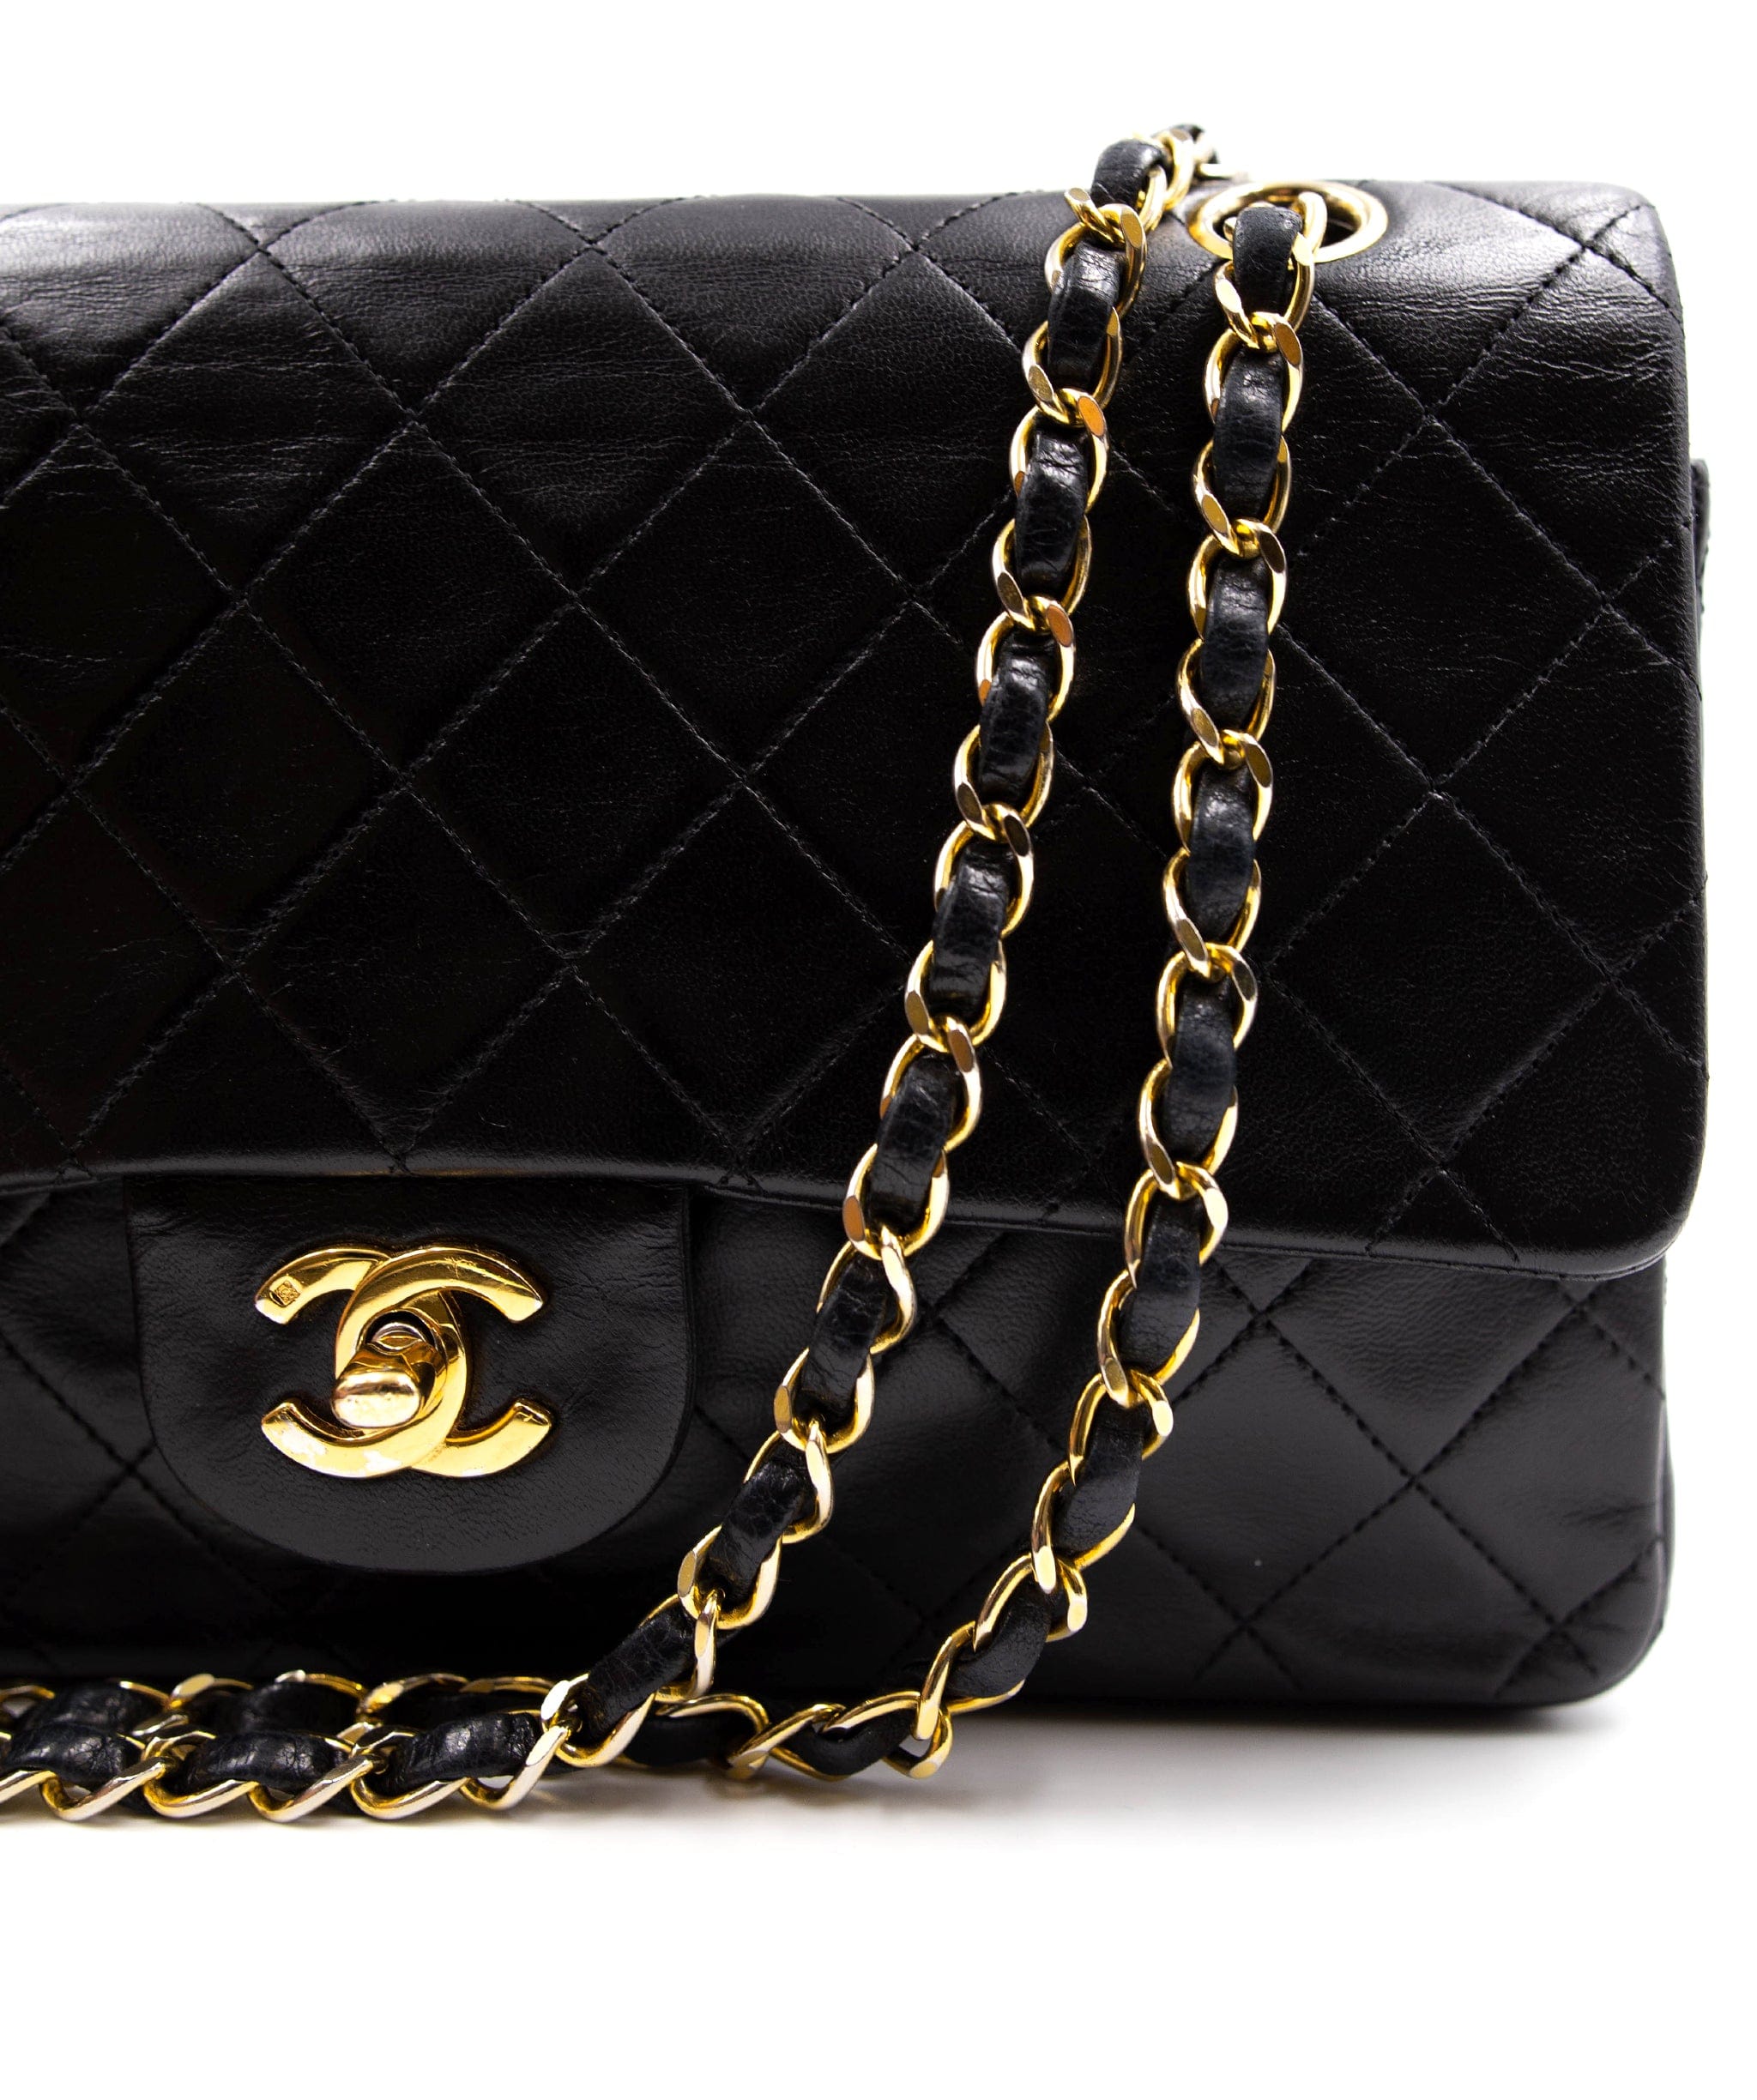 Chanel Chanel 10inch Classic flap AGL2241